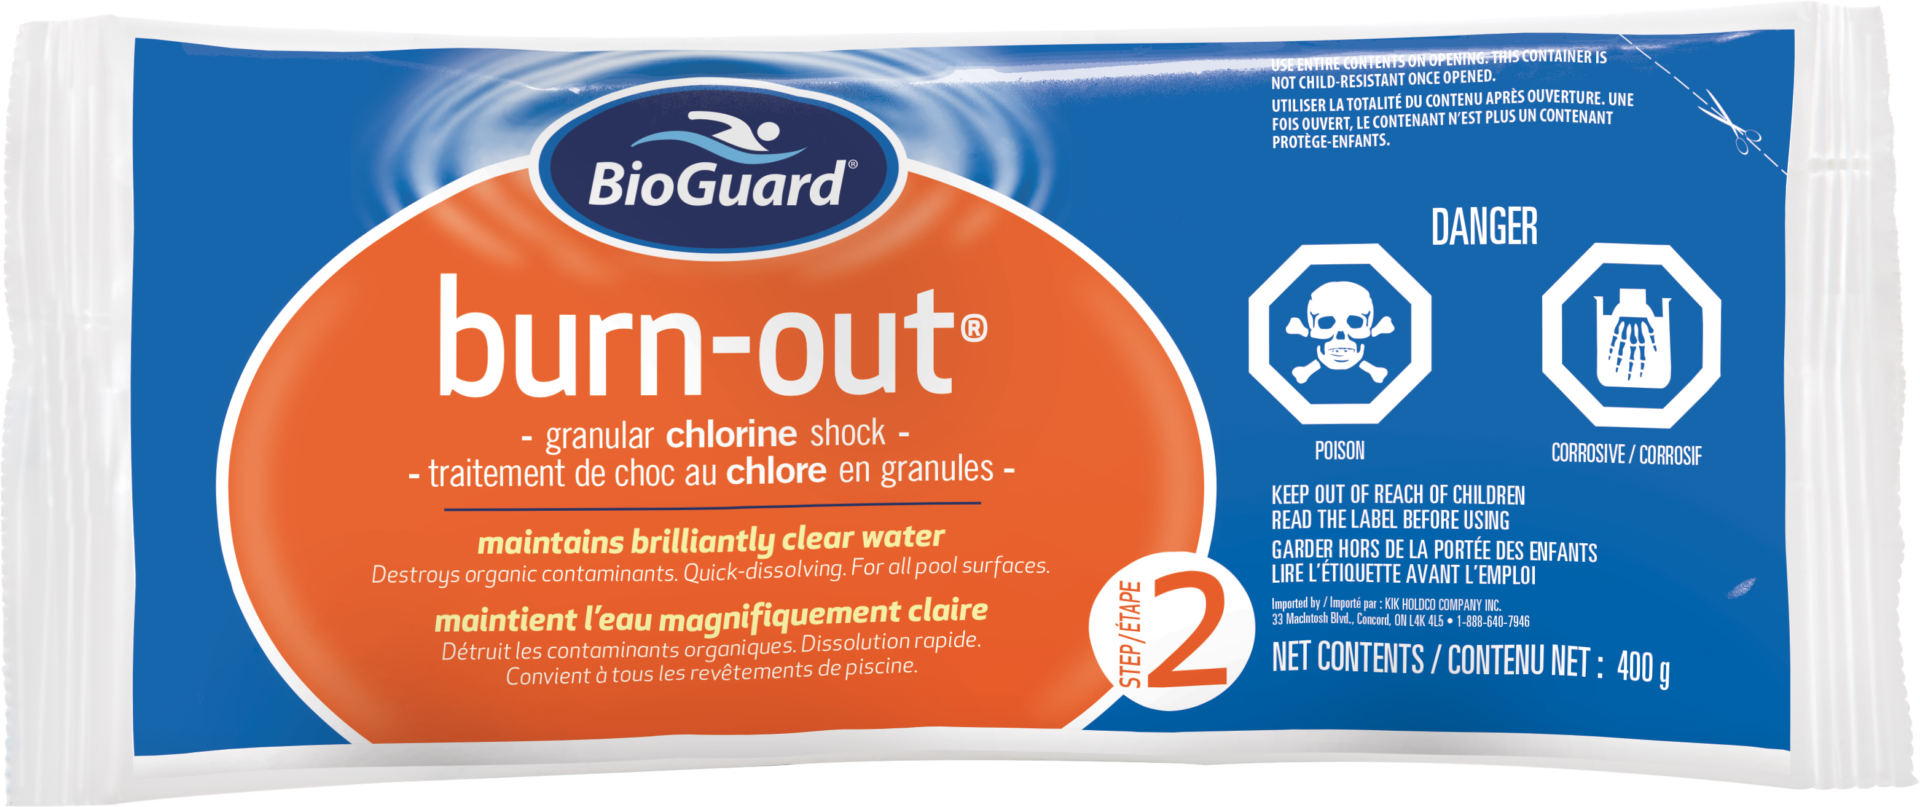 BioGuard Burn Out 400g - BioGuard Burn-Out 400g